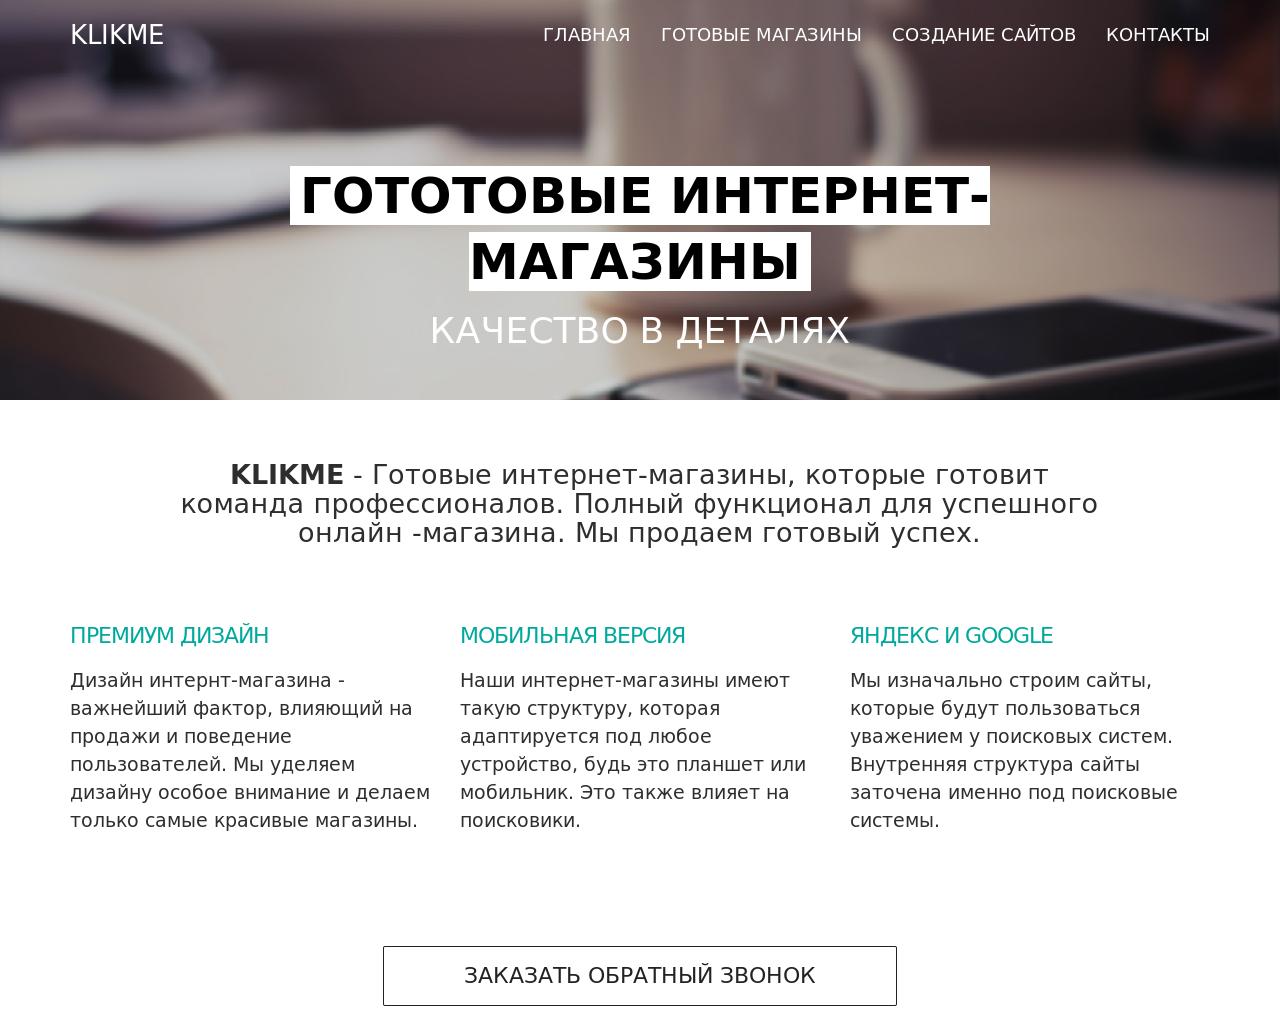 Изображение сайта klikme.ru в разрешении 1280x1024